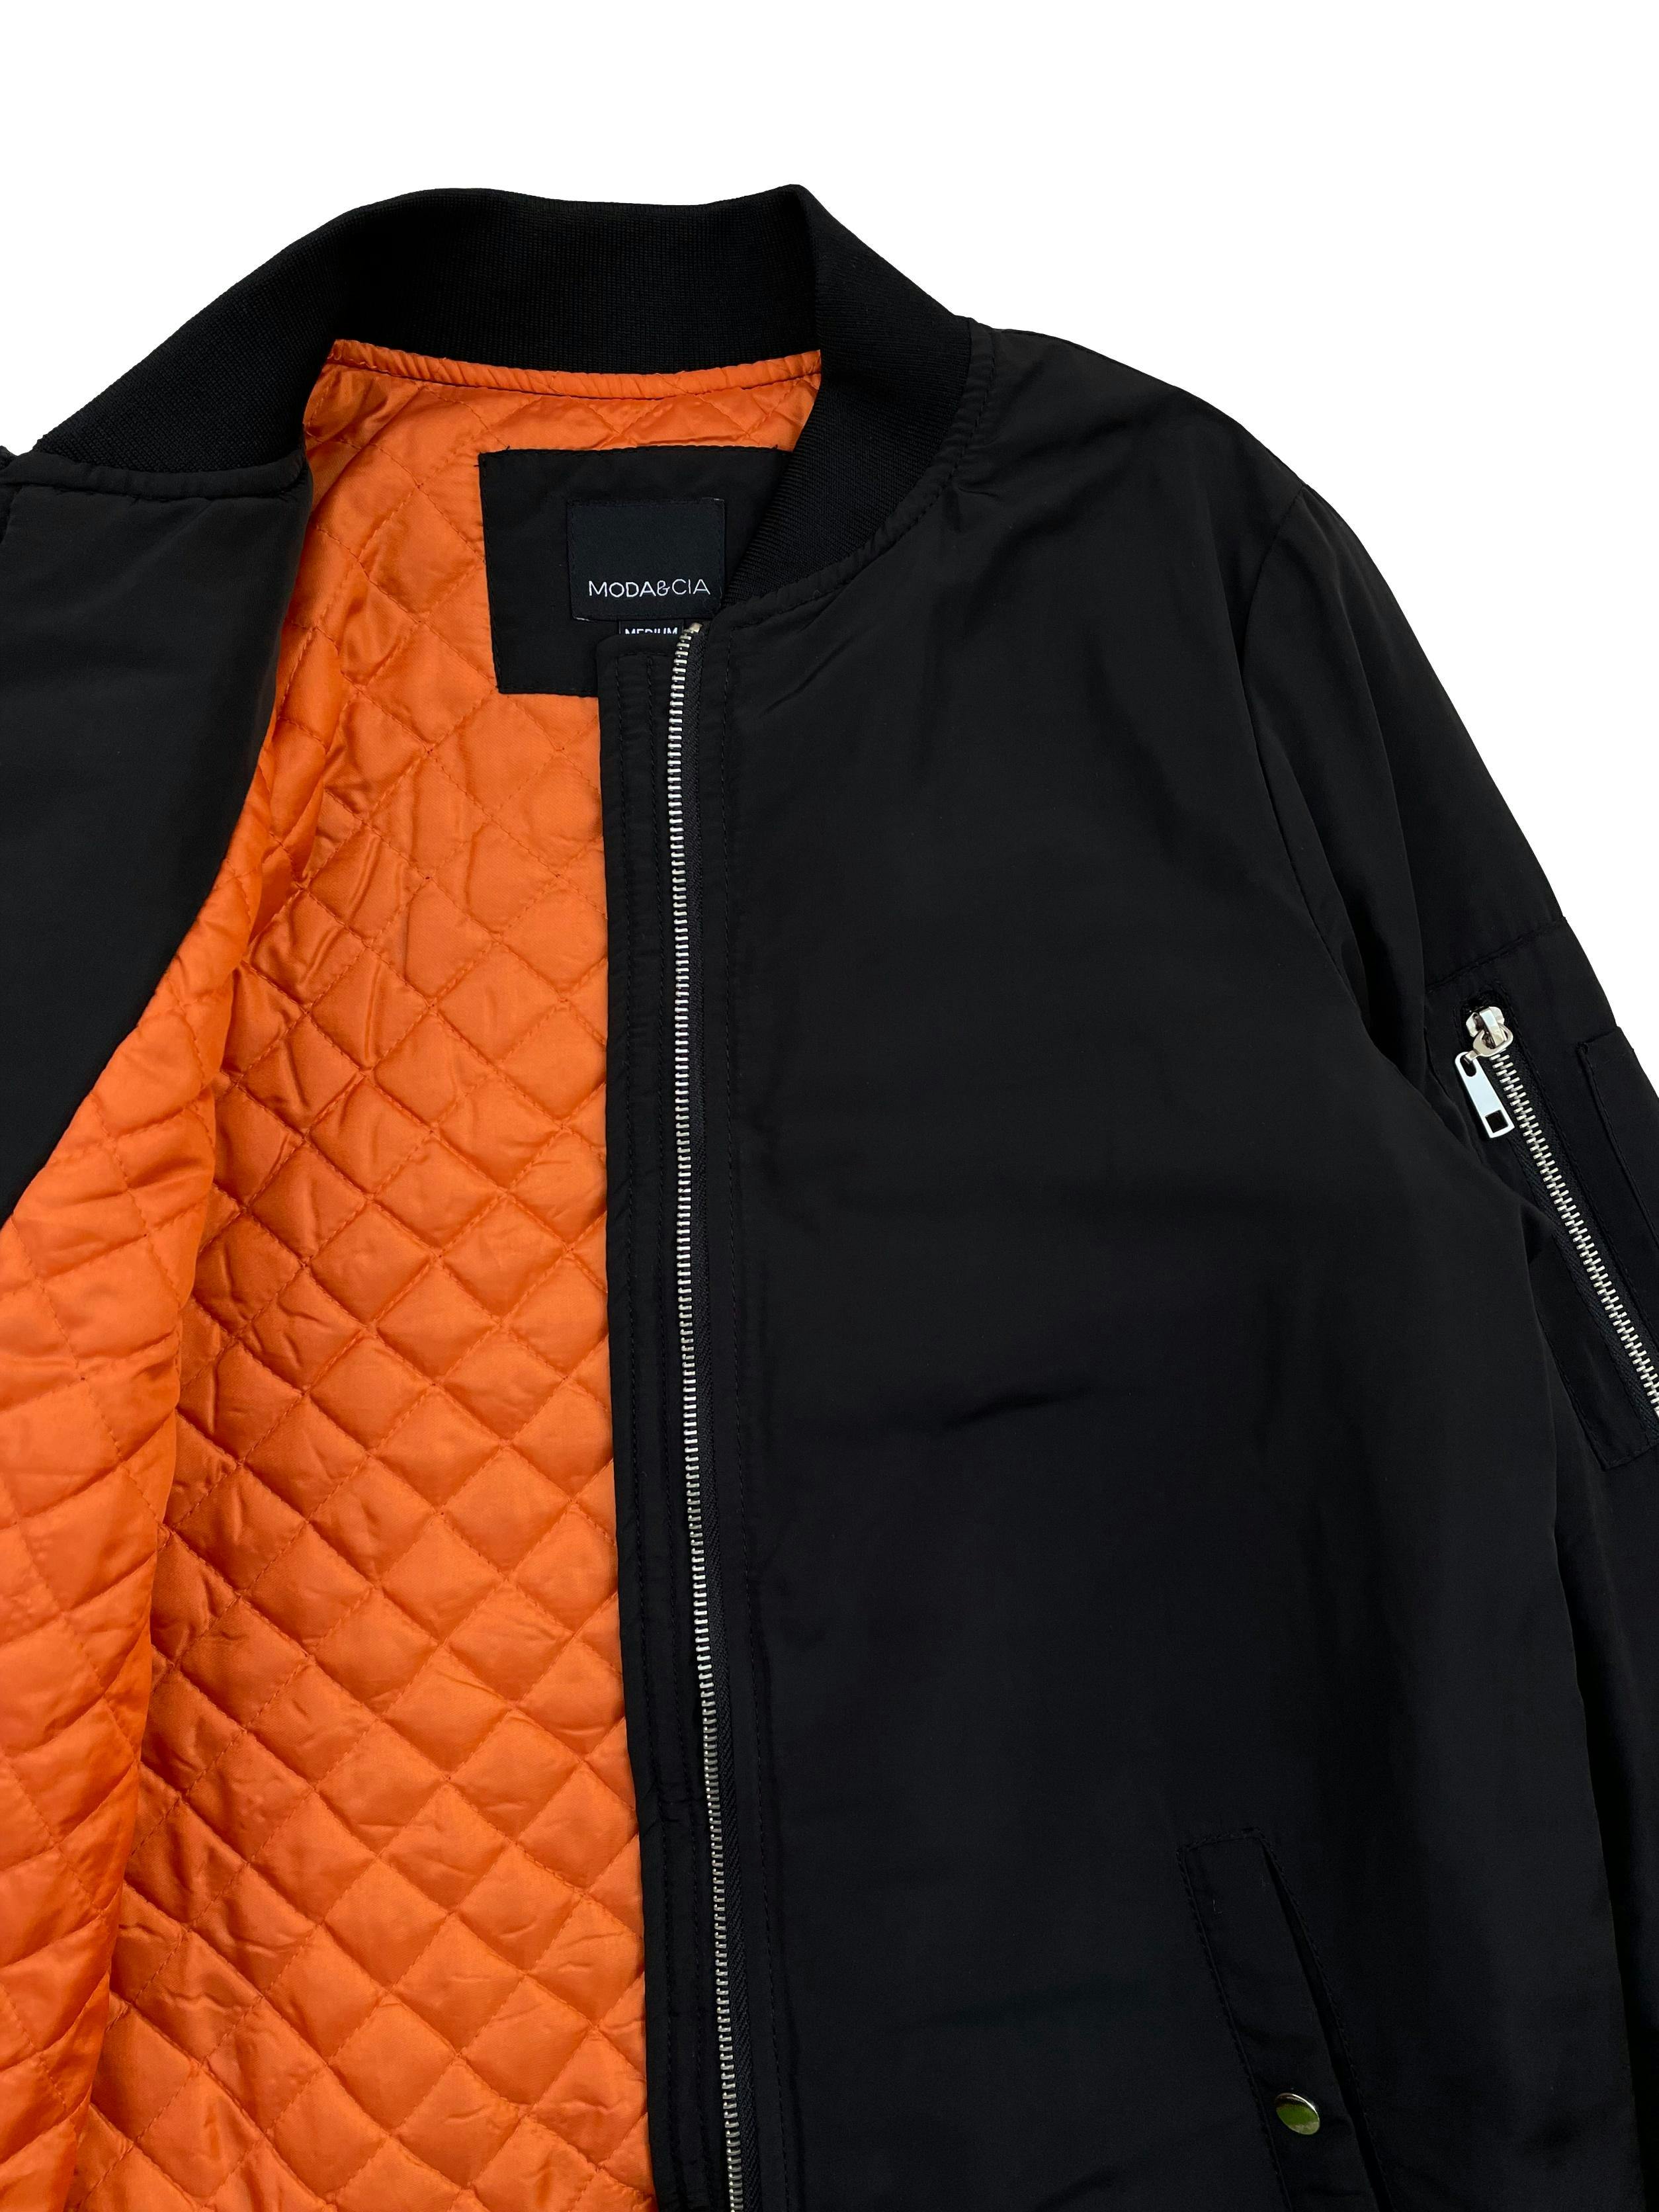 Bomber jacket Moda&Cia negra con forro naranja, ligeramente acolchada, cierre frontal , dos bolsillos delanteros y un bolsillo con cierre en el brazo. Busto 102cm , Largo 75cm. Precio original S/ 399